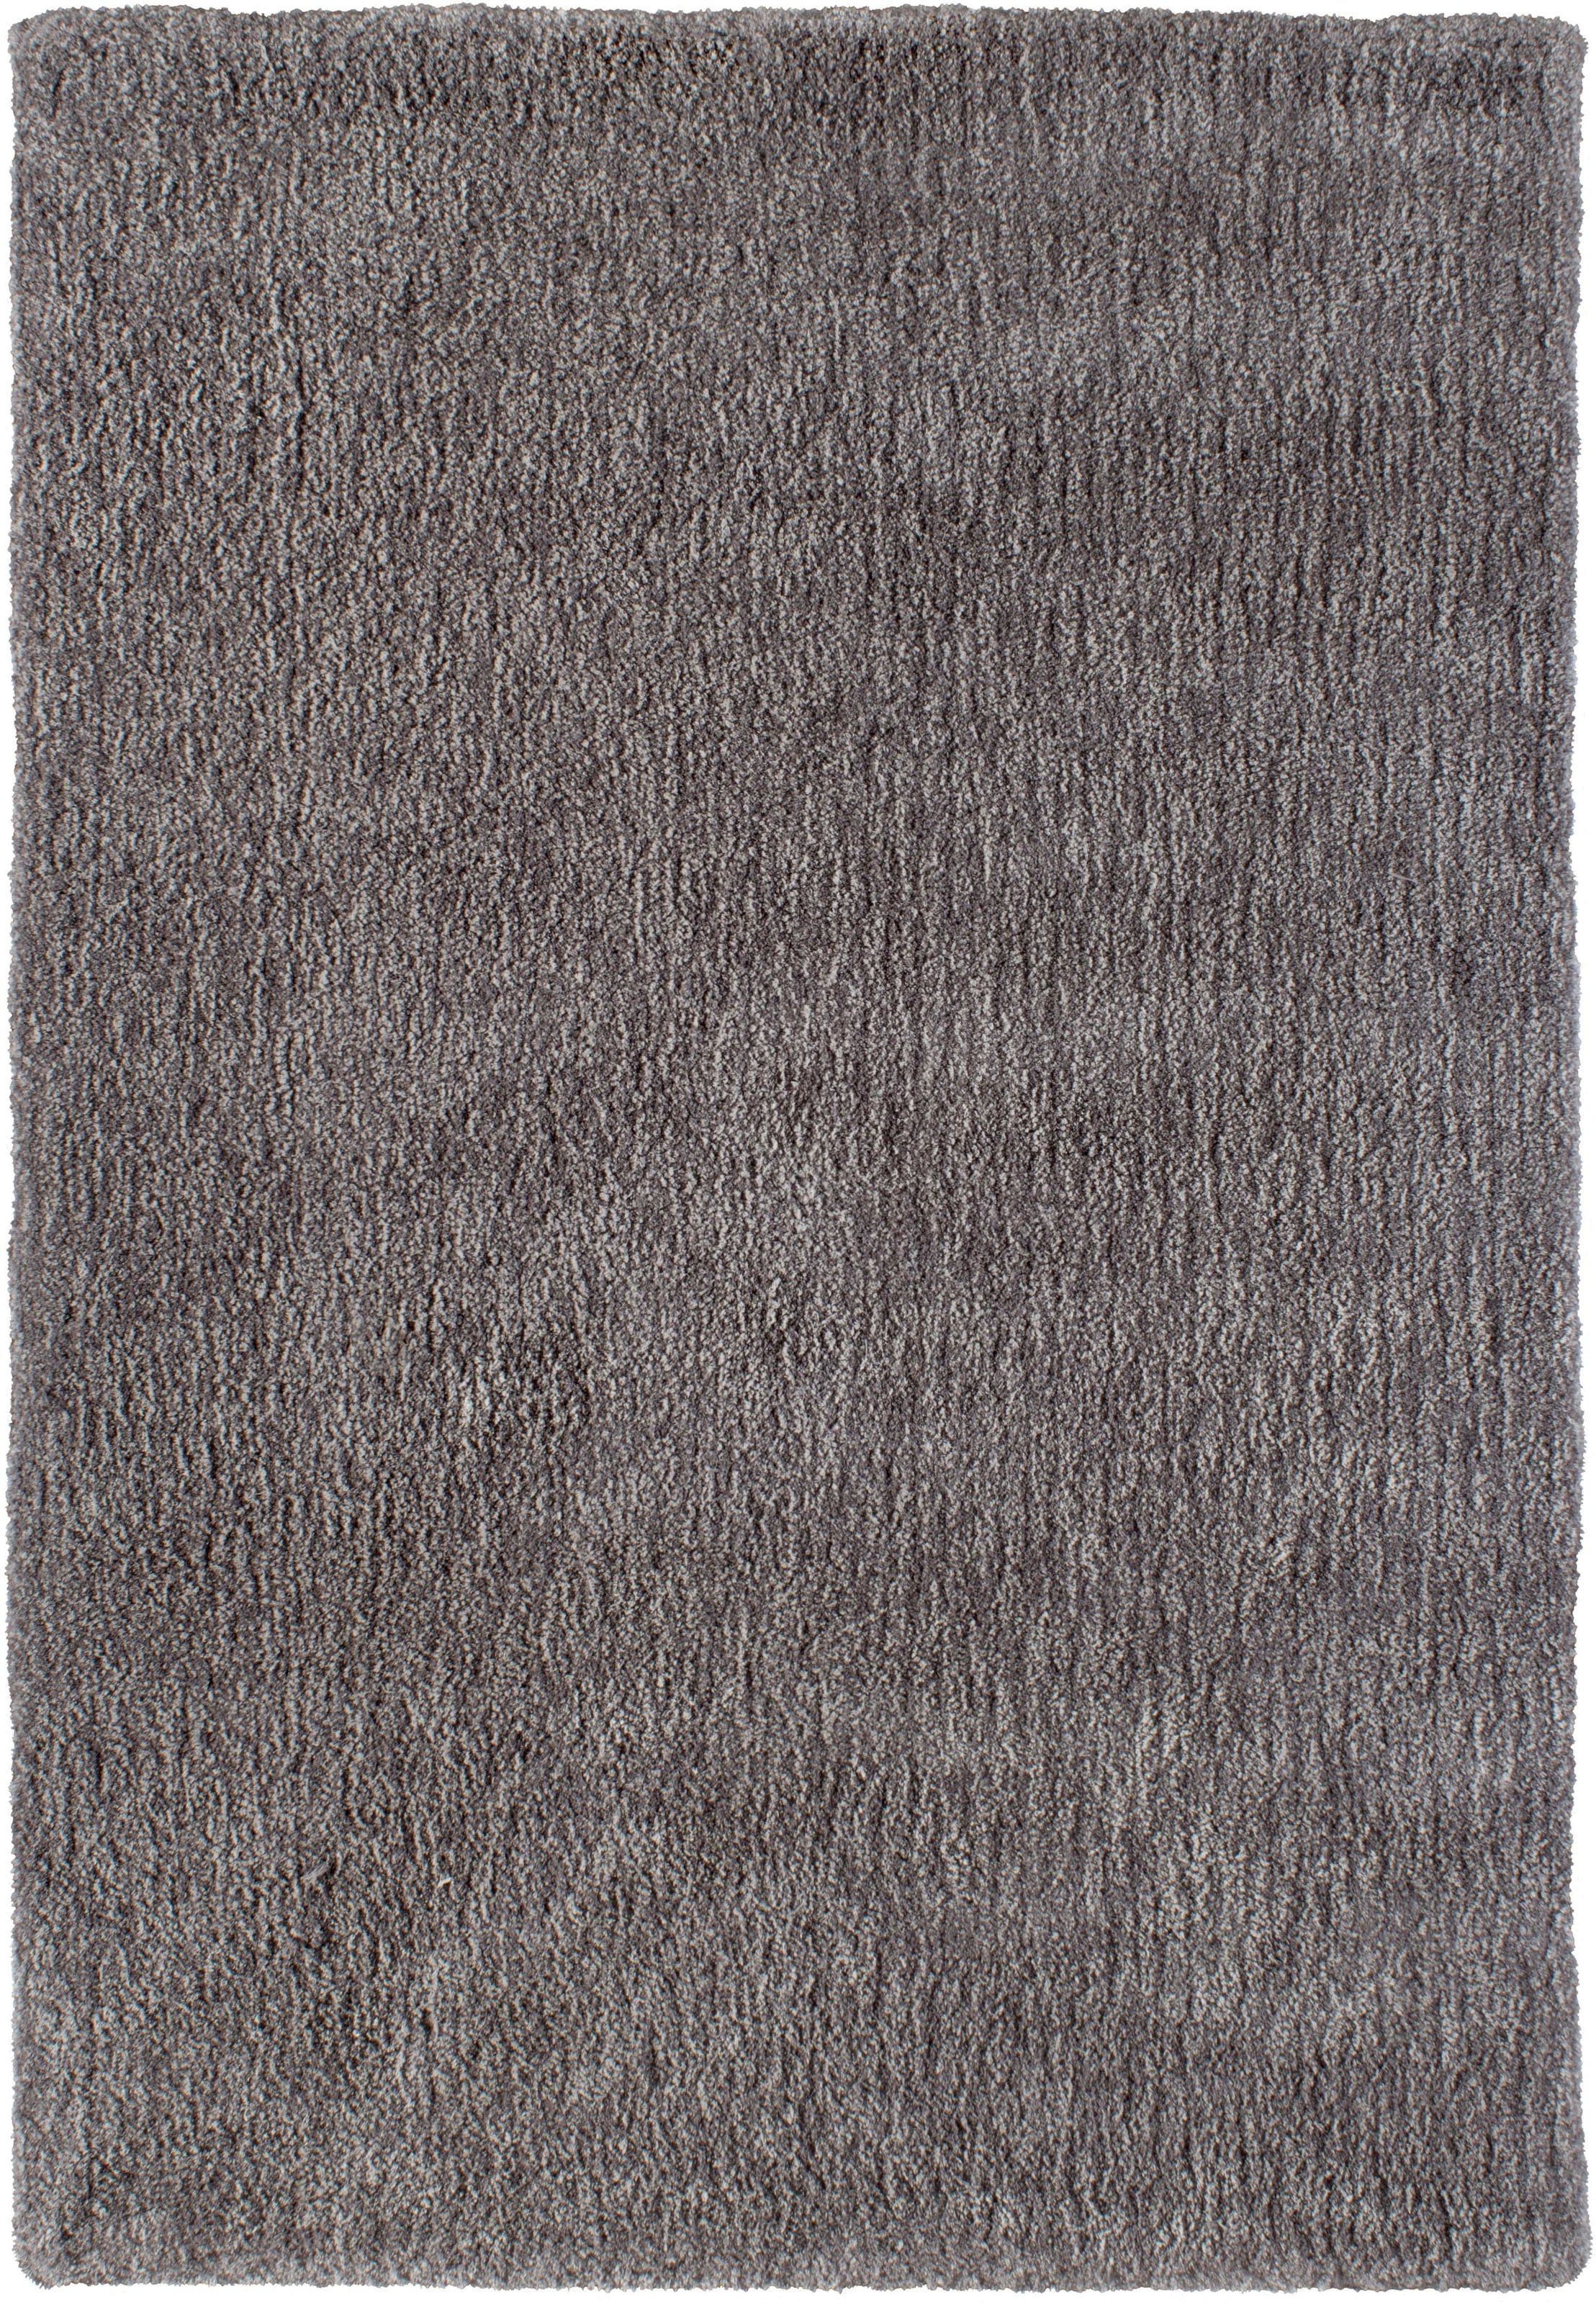 Image of Ackermann - Barbara Becker Hochflor-Teppich »Touch«, rechteckig, 27 mm Höhe, handgetuftet, besonders weich durch Microfaser, Wohnzimmer einkaufen bei Ackermann Versand Schweiz